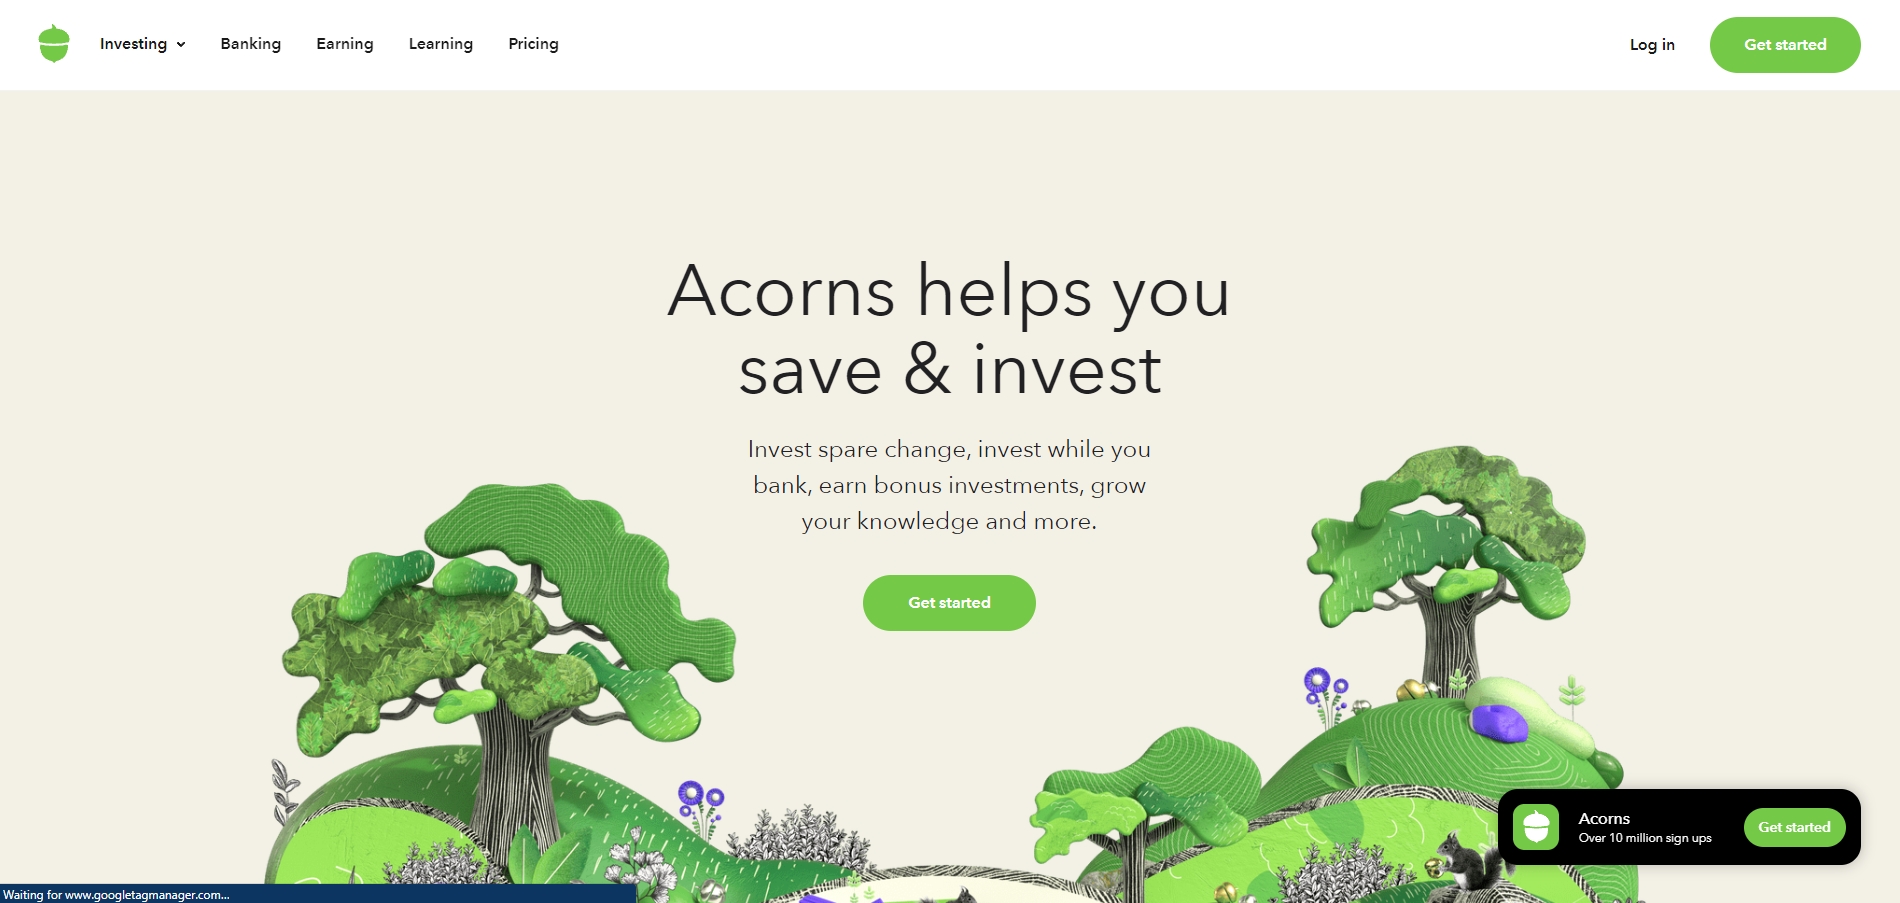 Acorns image featured